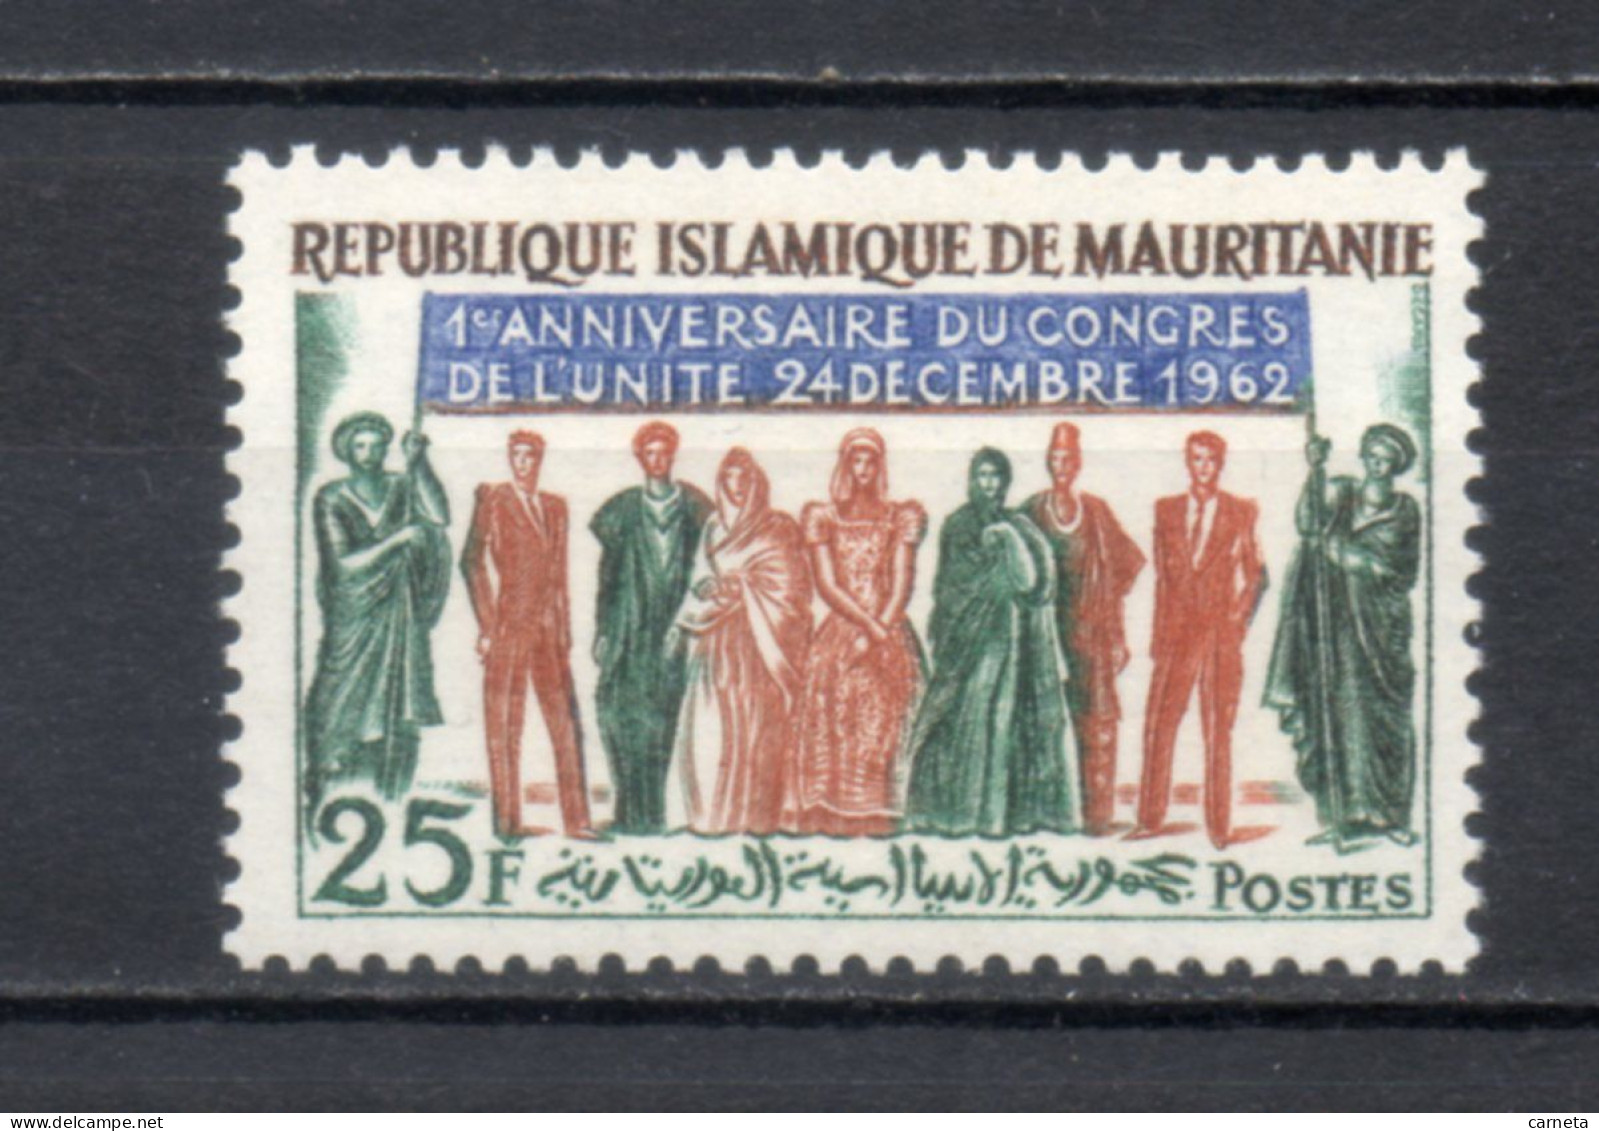 MAURITANIE  N° 163    NEUF SANS CHARNIERE   COTE 1.00€    CONGRES DE L'UNITE - Mauritanie (1960-...)